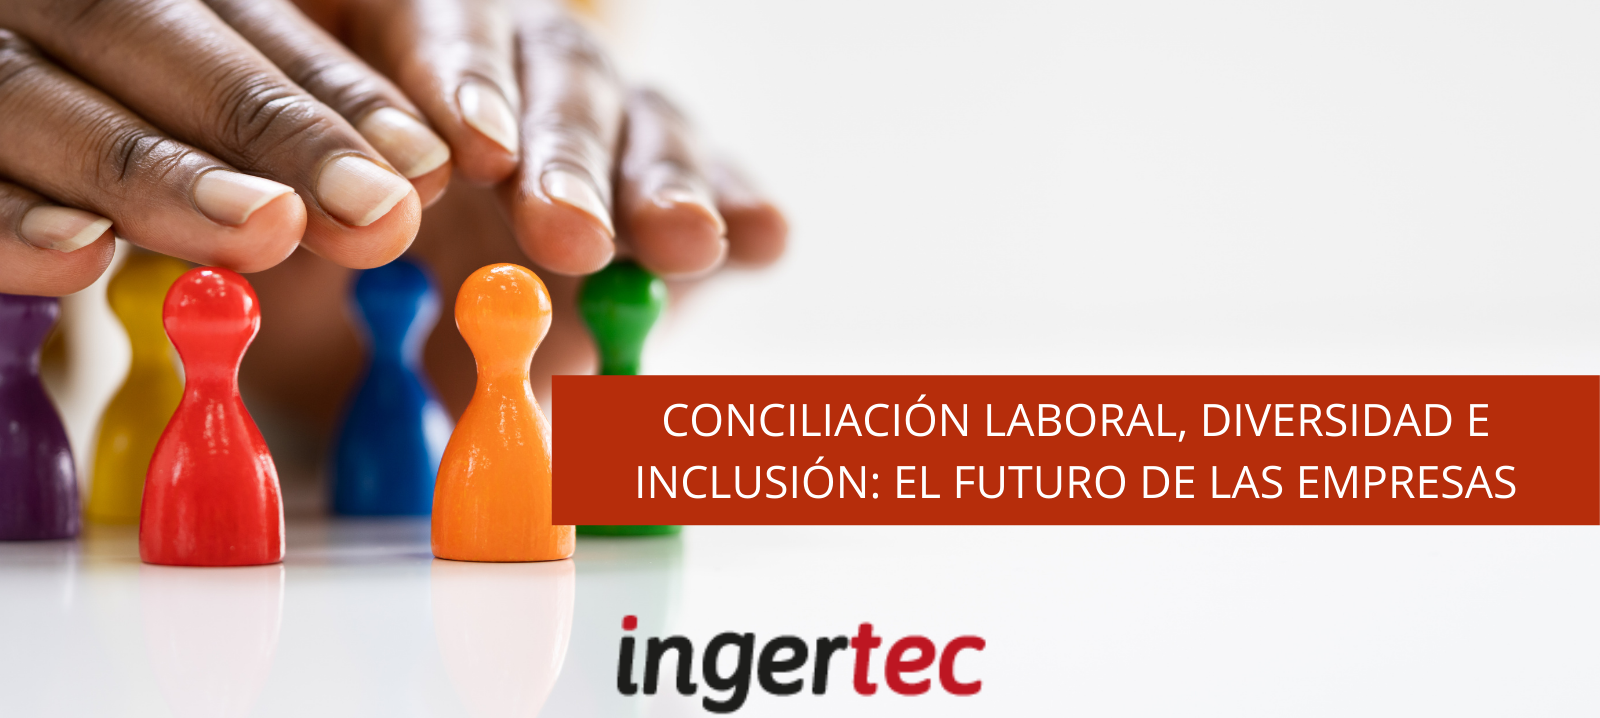 Conciliación laboral, diversidad e inclusión: el futuro de las empresas